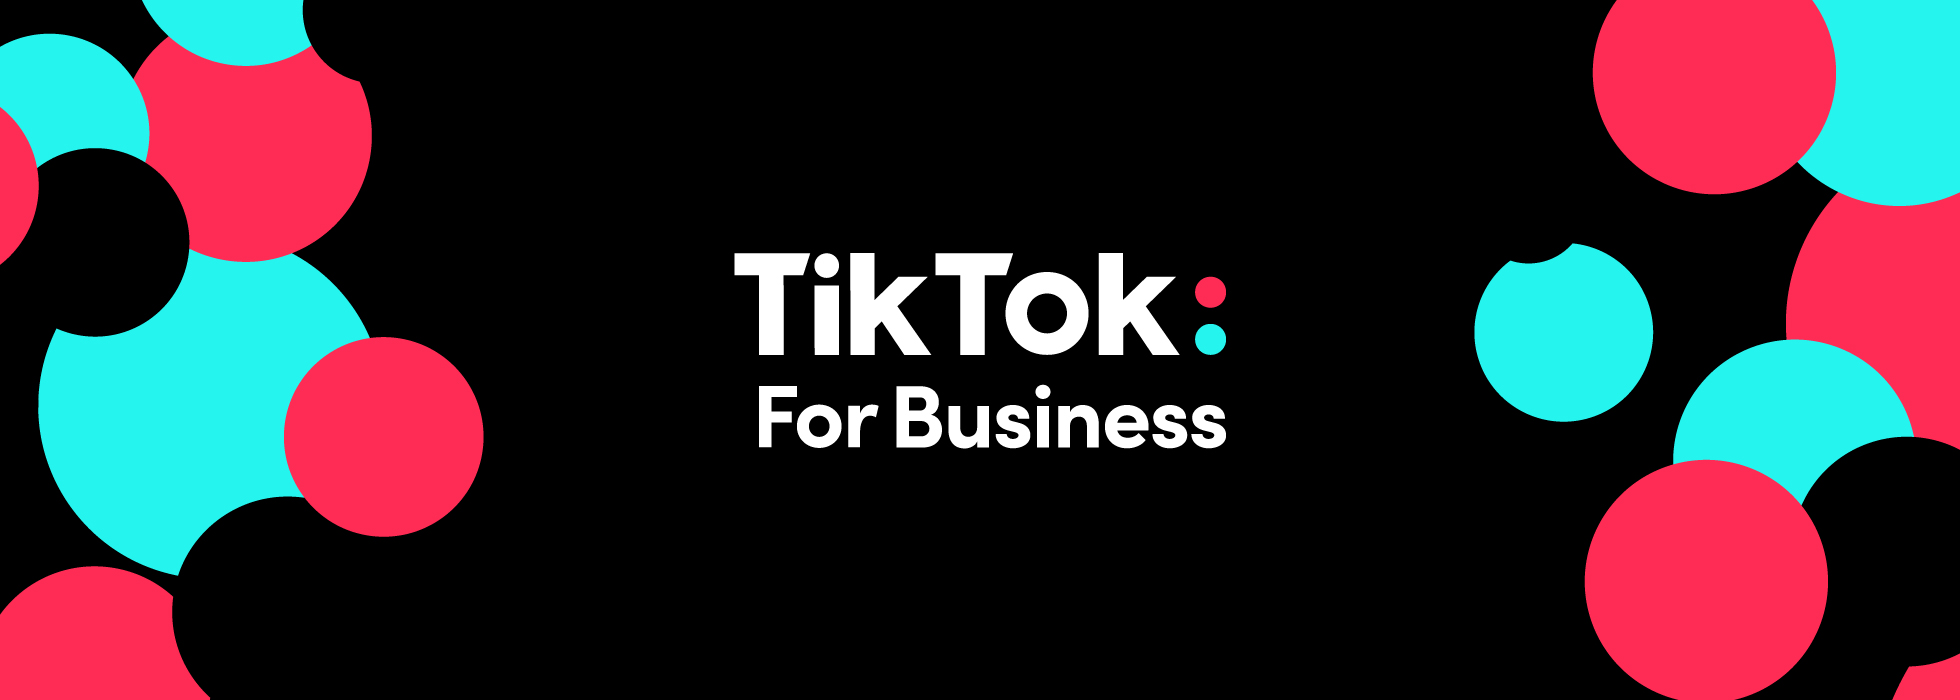 Banner do TikTok for business